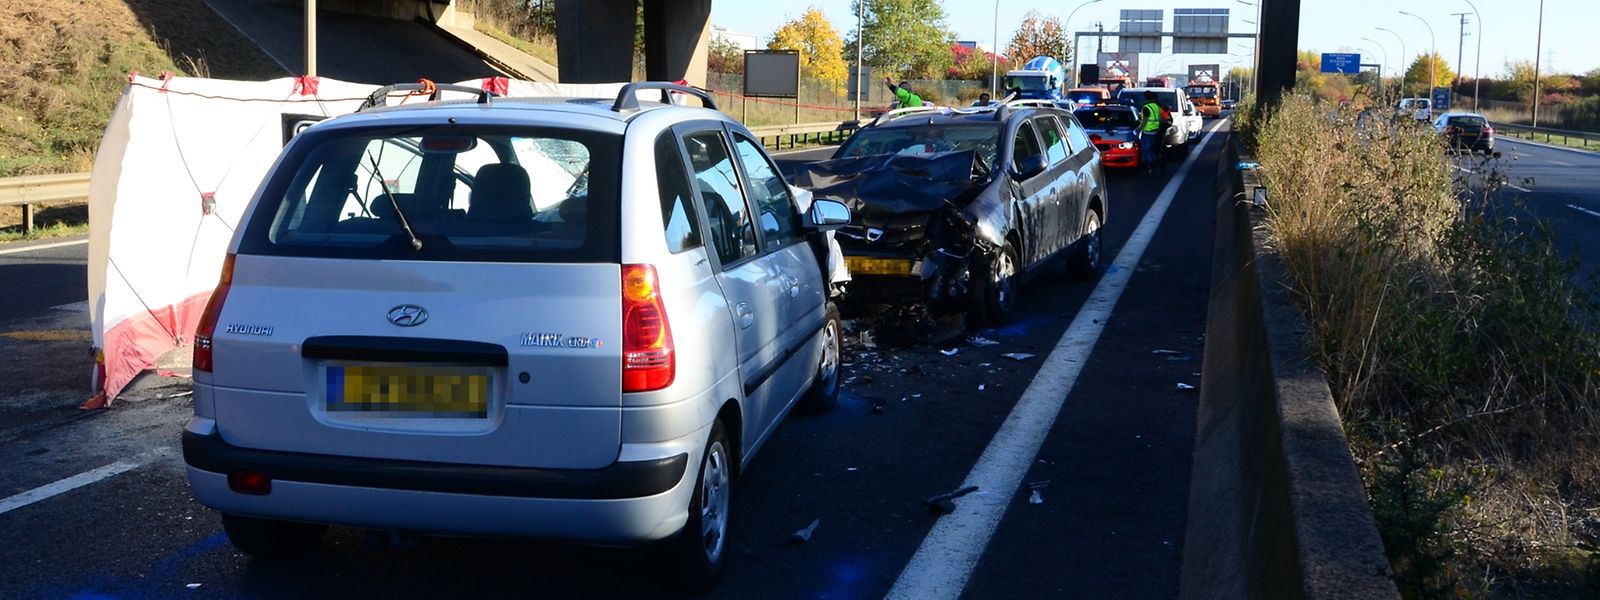 Der Fahrer des grauen Hyundai war am Samstagmorgen falsch auf die Autobahn A 4 aufgefahren. Kurz danach kam es zu einer fatalen Frontalkollision.